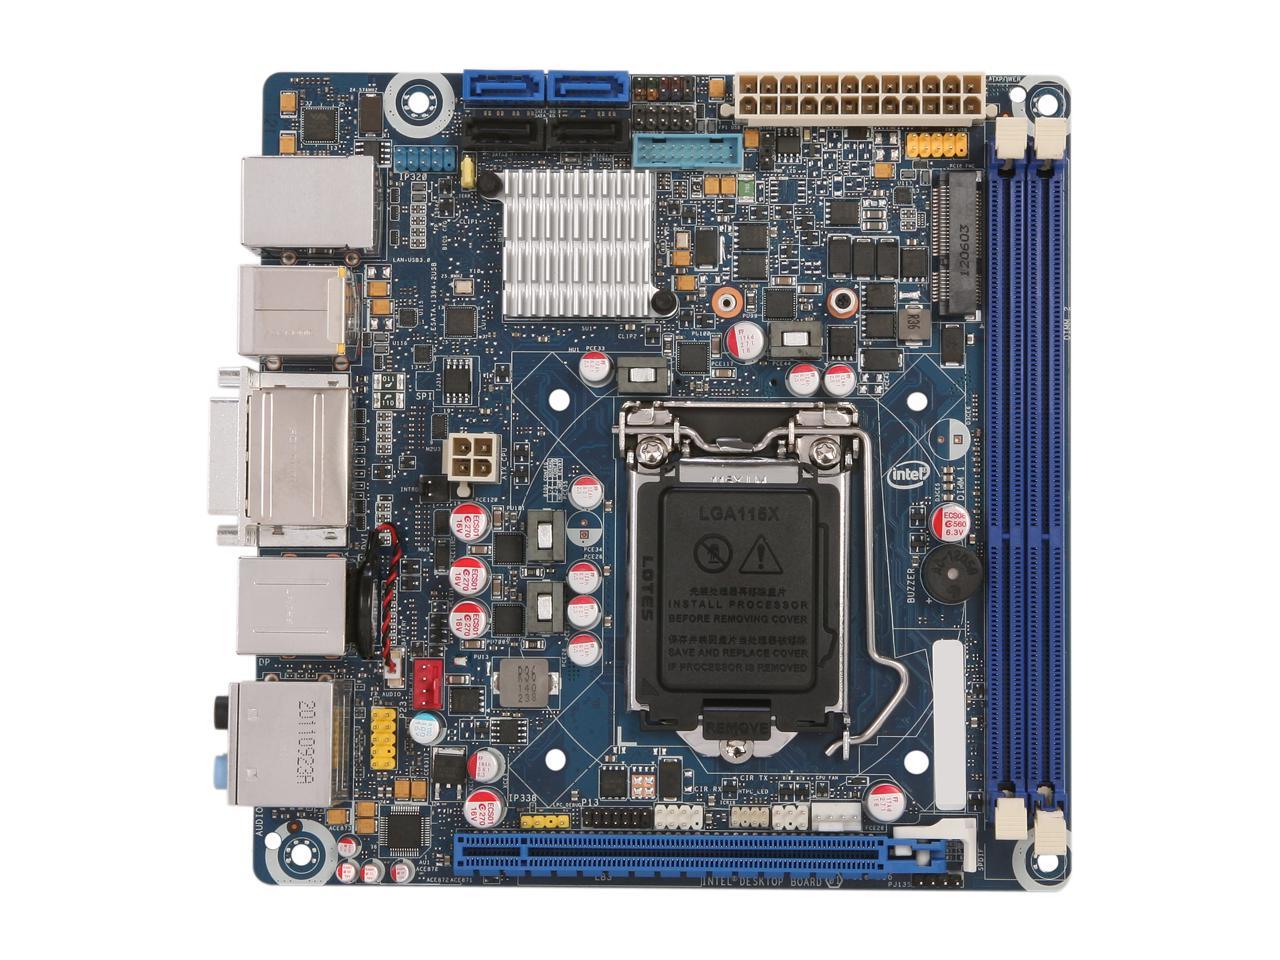 Intel BOXDH77DF LGA 1155 Mini ITX Intel Motherboard - Newegg.ca